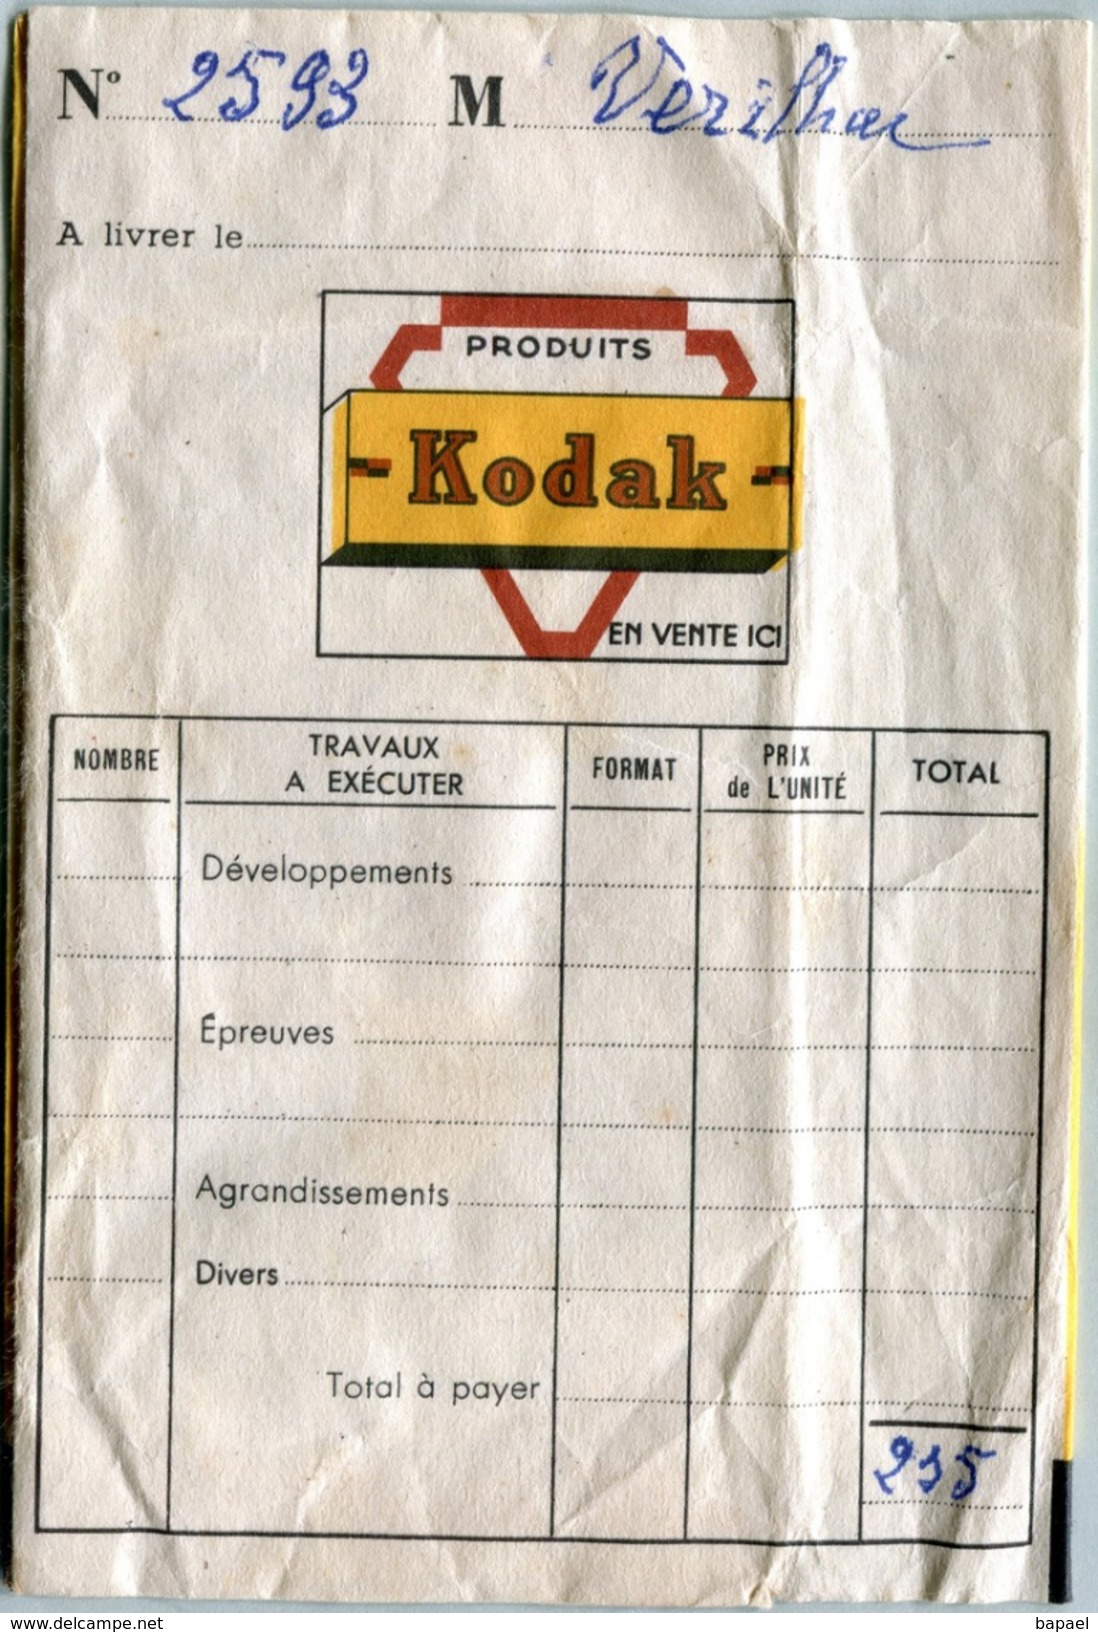 Pochette (Vide) Kodack De Négatifs Photographiques - Gamonnet à Lyon - Matériel & Accessoires